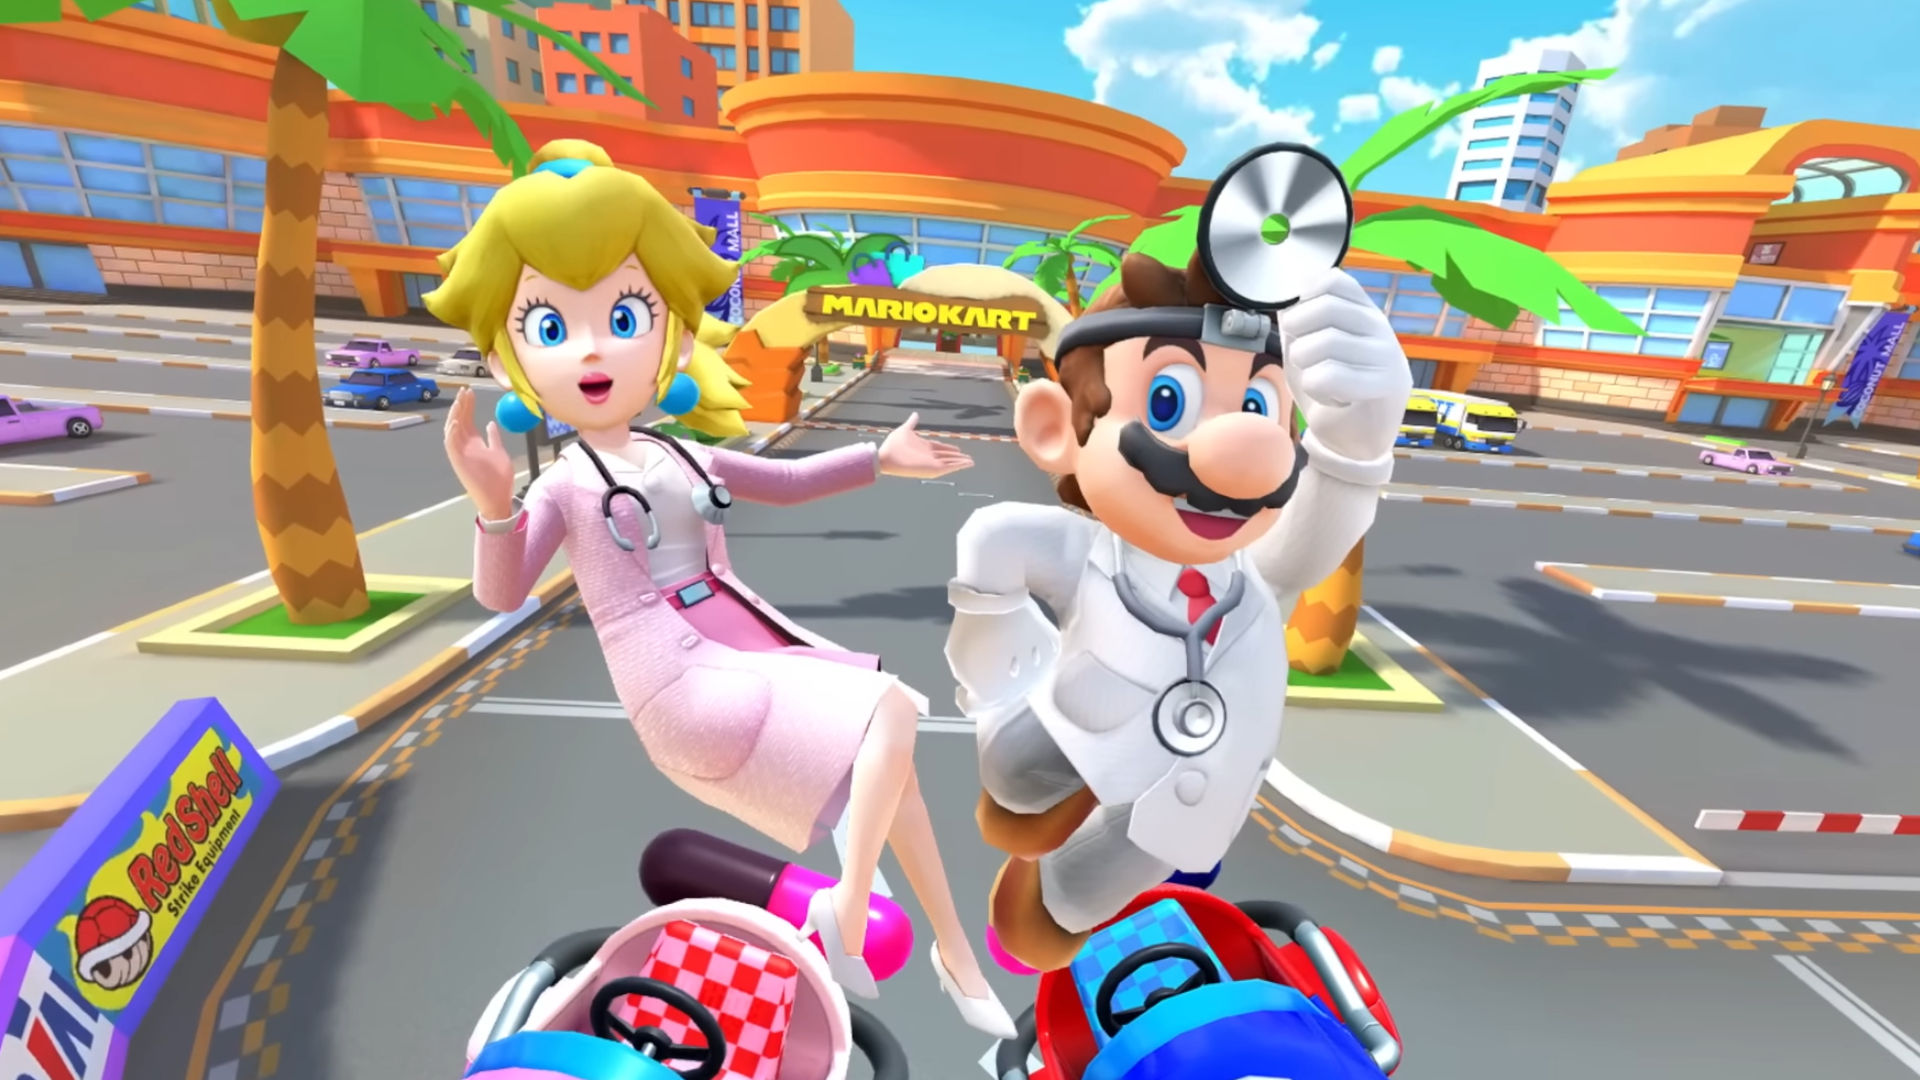 Mario Kart Tour - Winter Tour Trailer 